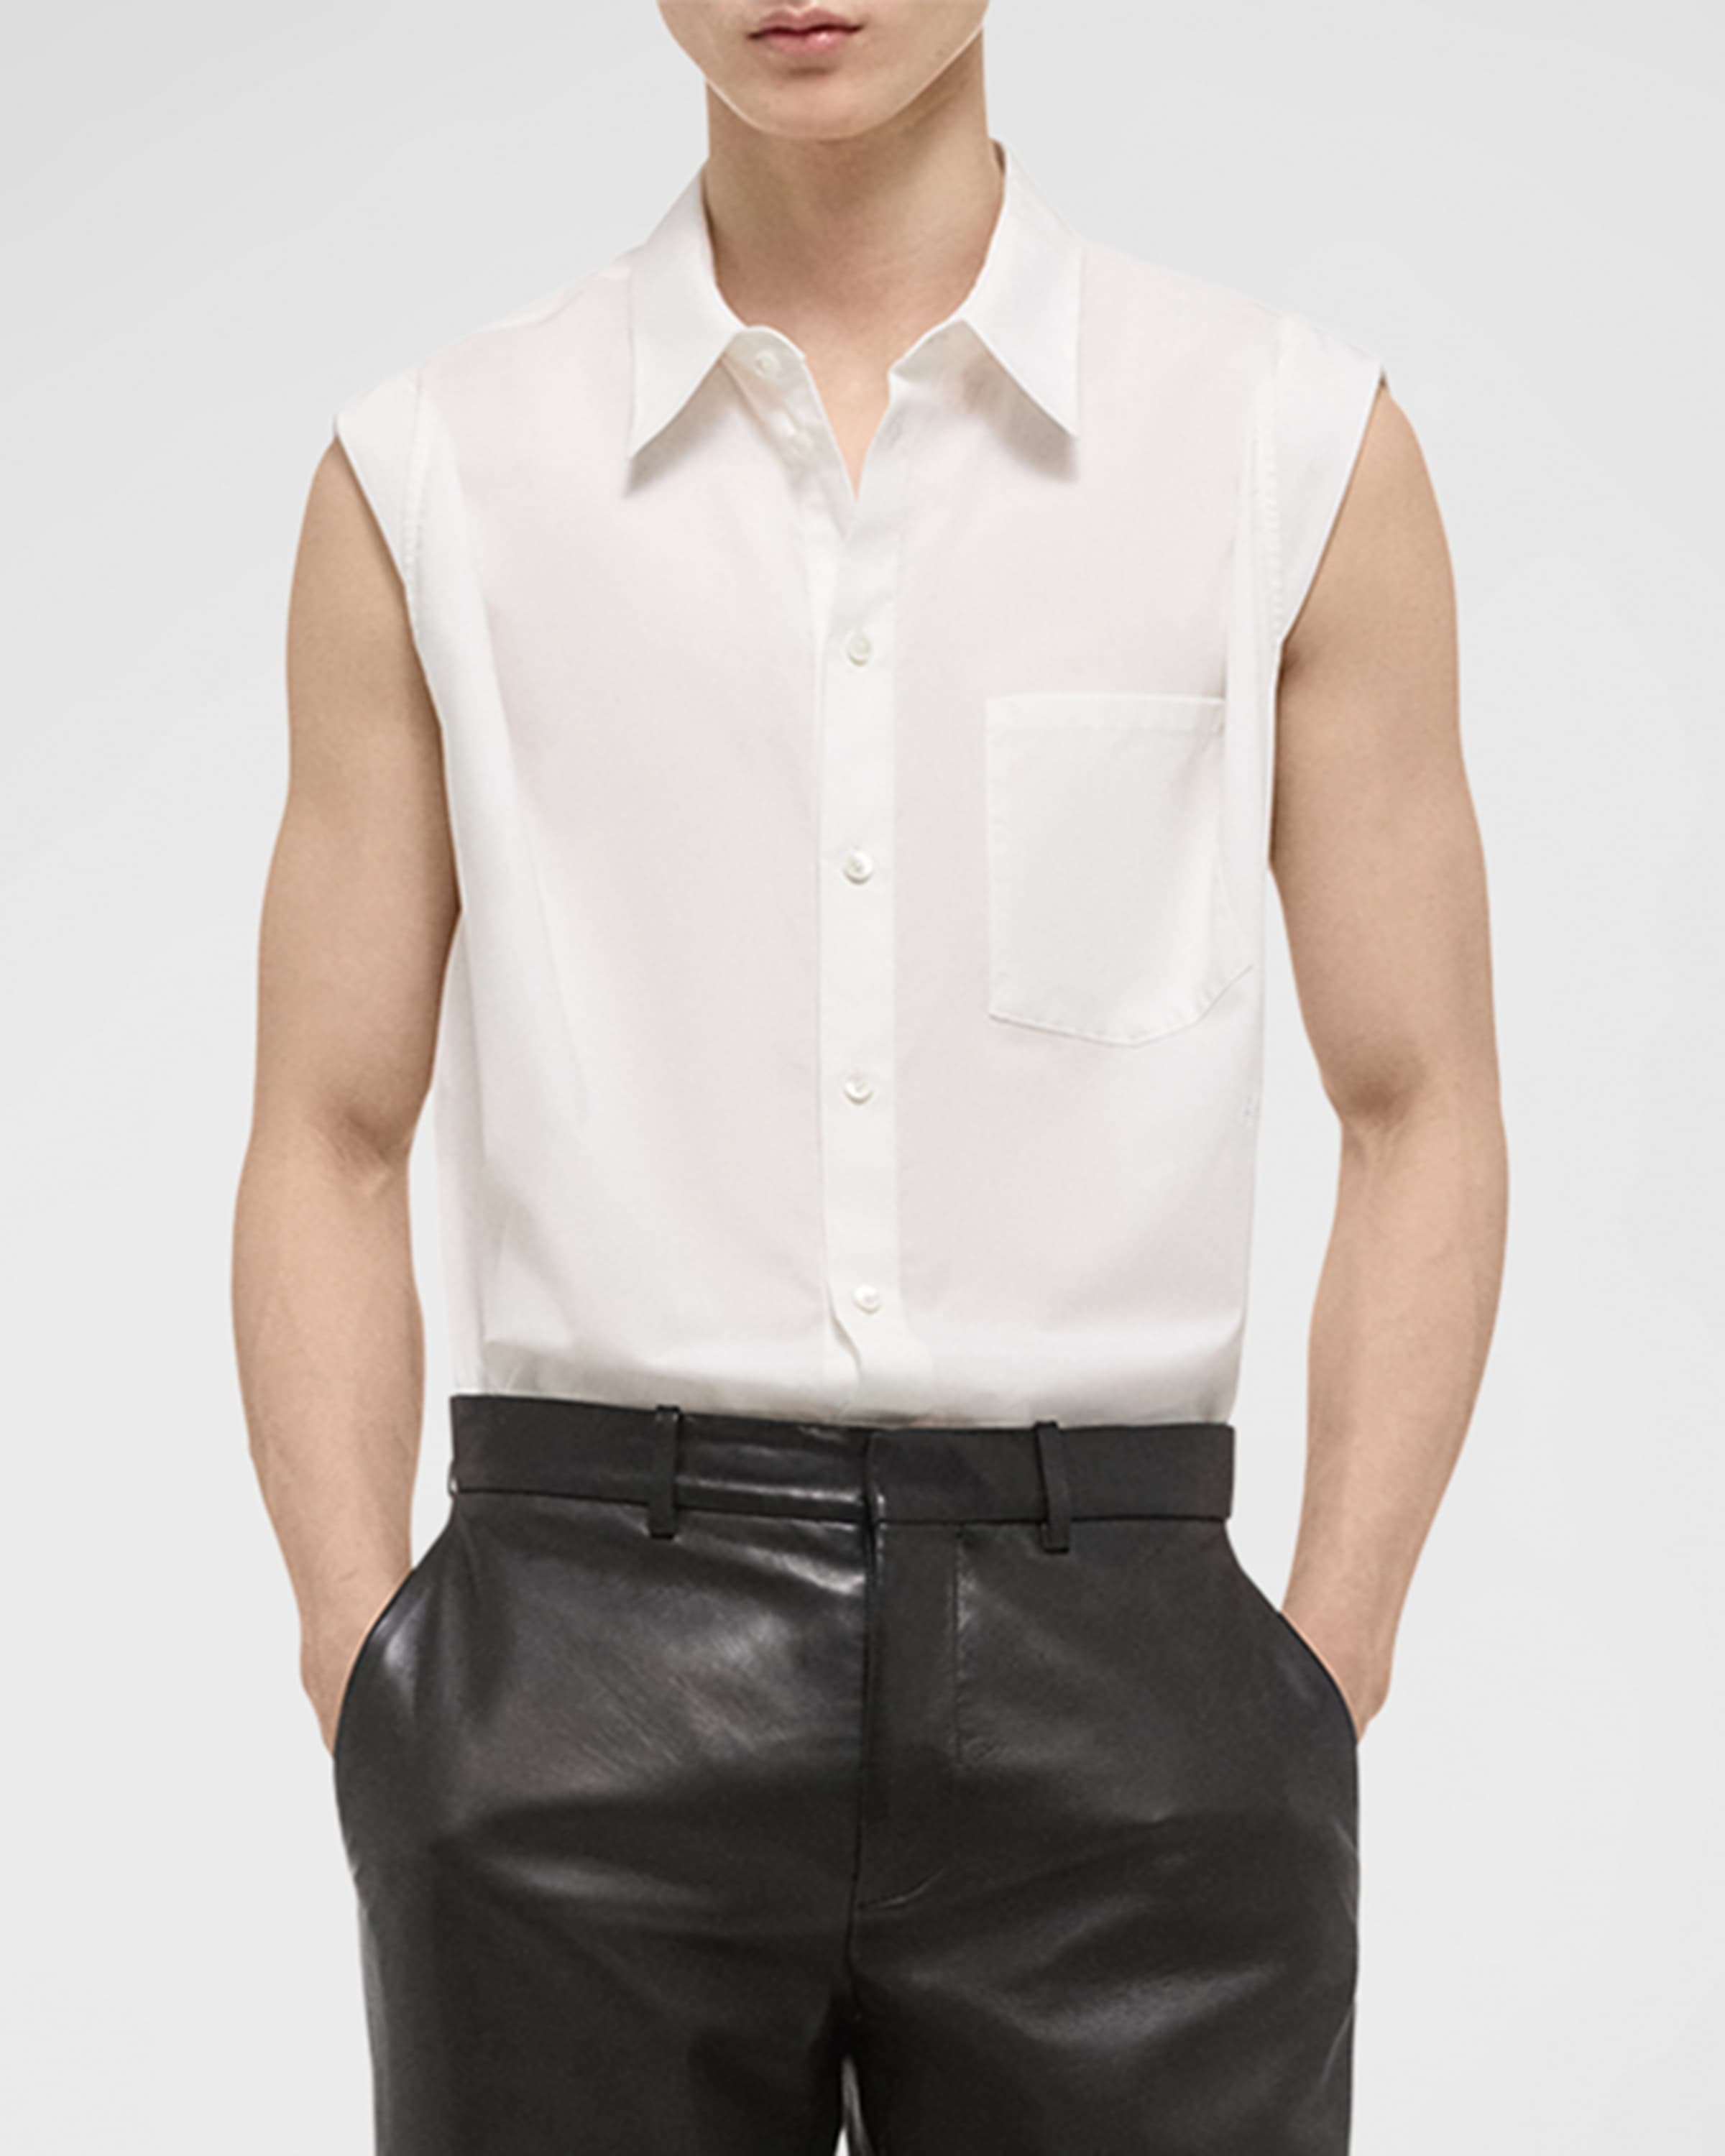 Men's Sleeveless Button-Down Shirt - 2